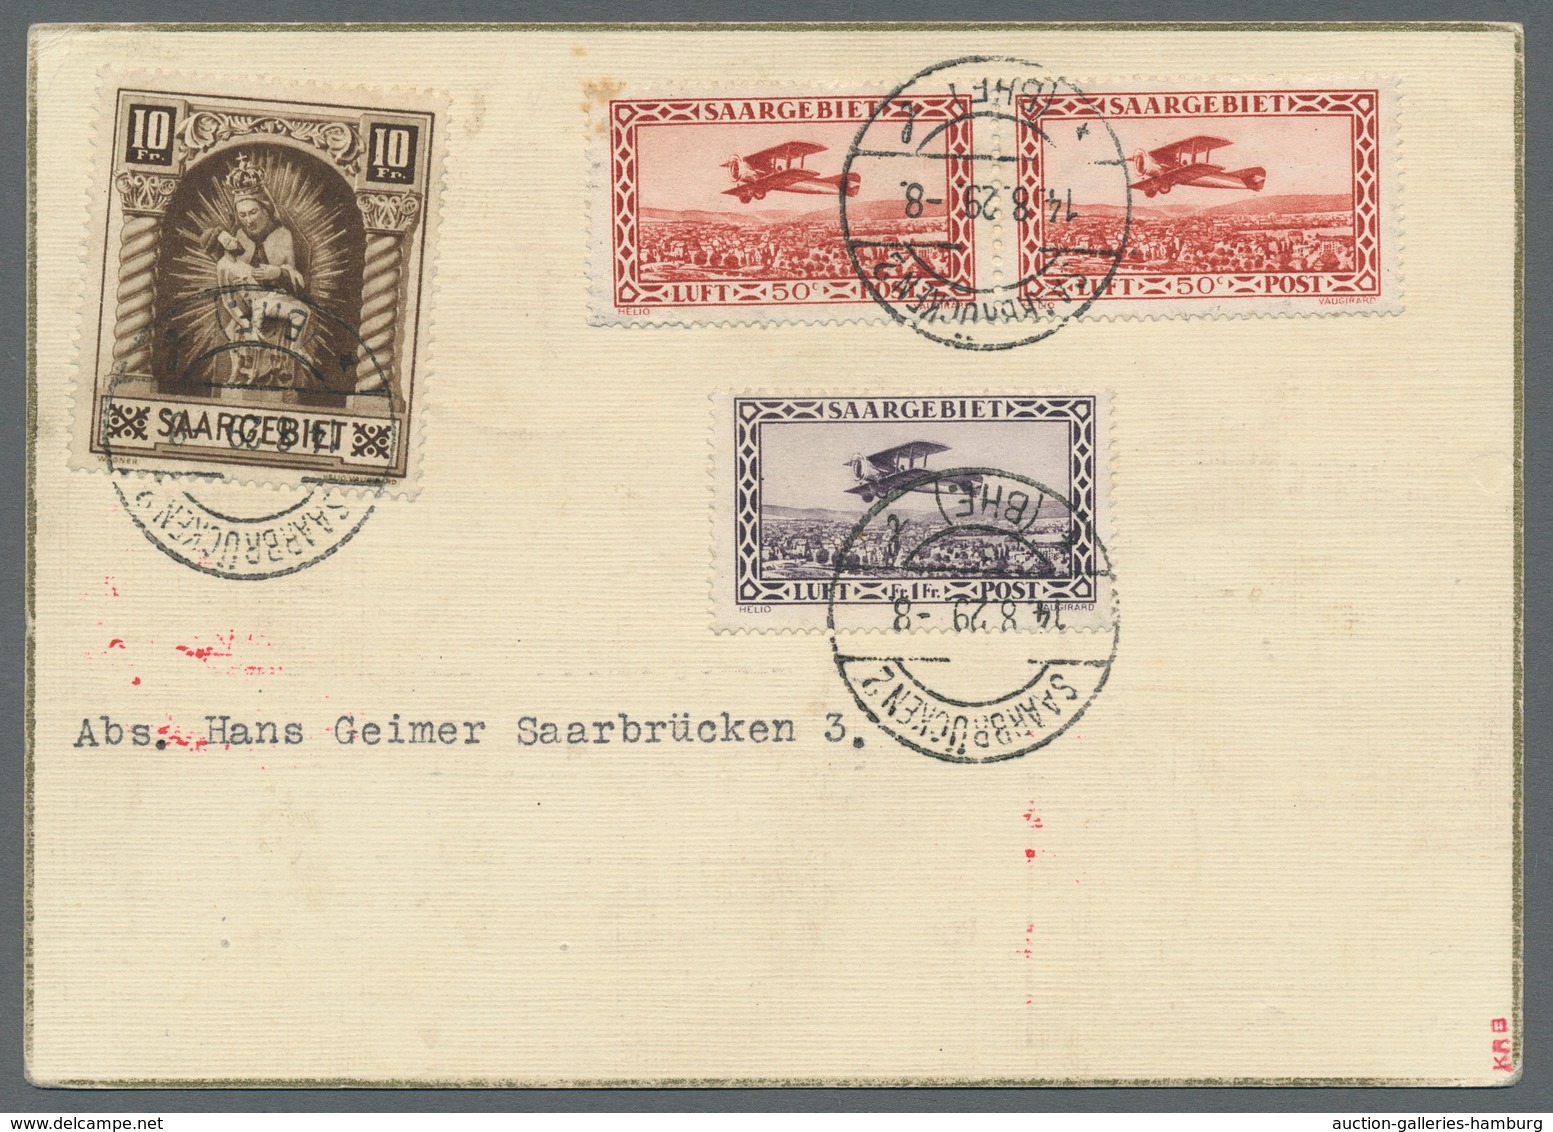 Zeppelinpost Deutschland: 1929 - Weltrundfahrt/Etappe Friedrichshafen-Lakehurst, Hochwertig Frankier - Poste Aérienne & Zeppelin